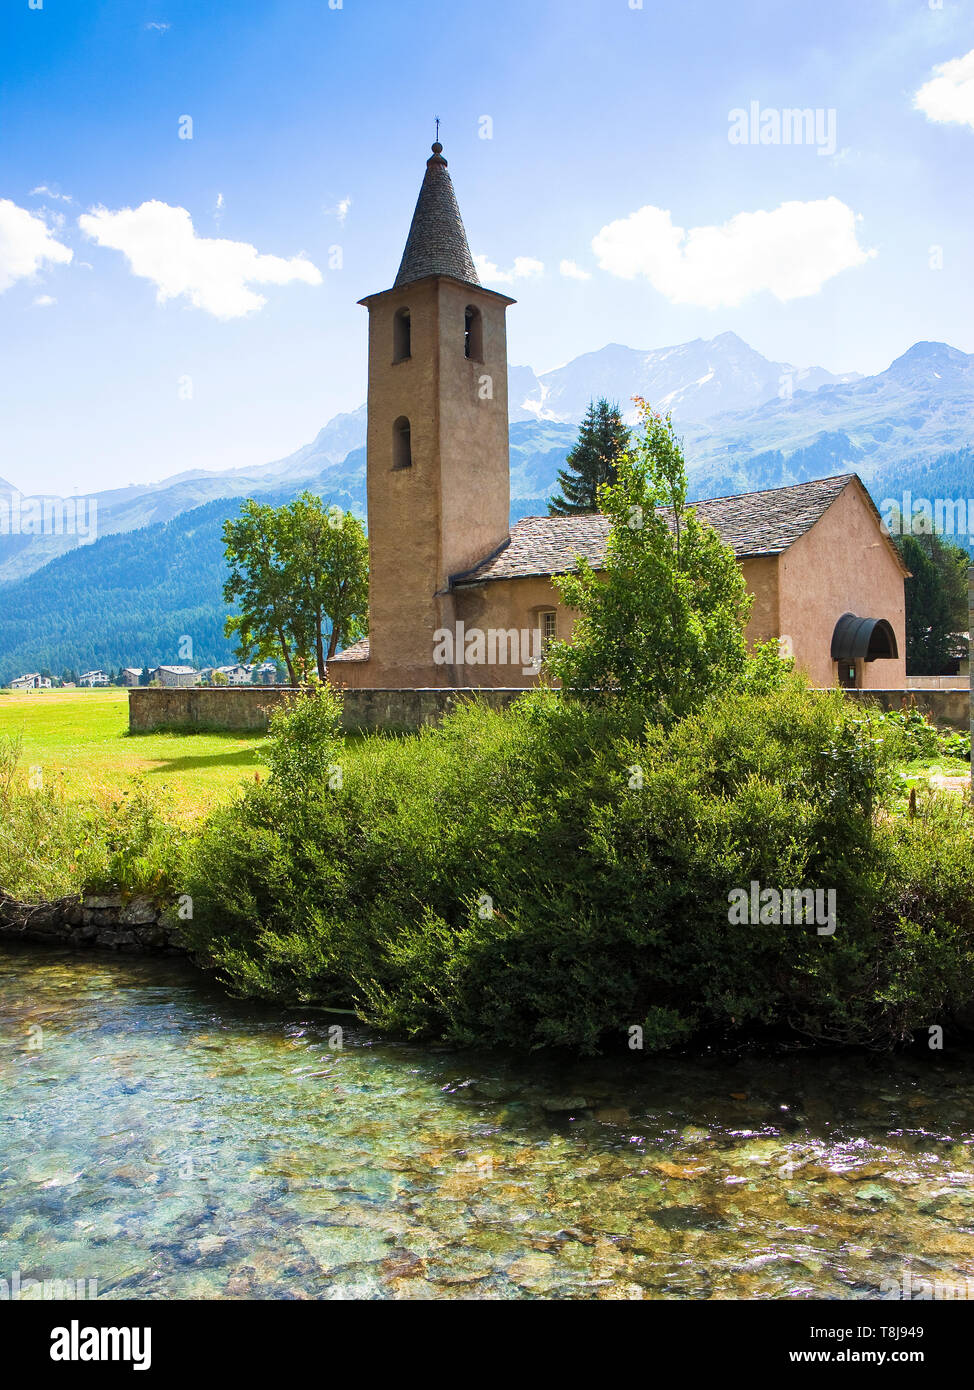 Little church around Sils lake - Upper Engadine Valley - Switzerland. Lej da Segl, 1799 m. Sils Lake is a lake in the Upper Engadine valley, Grisons,  Stock Photo